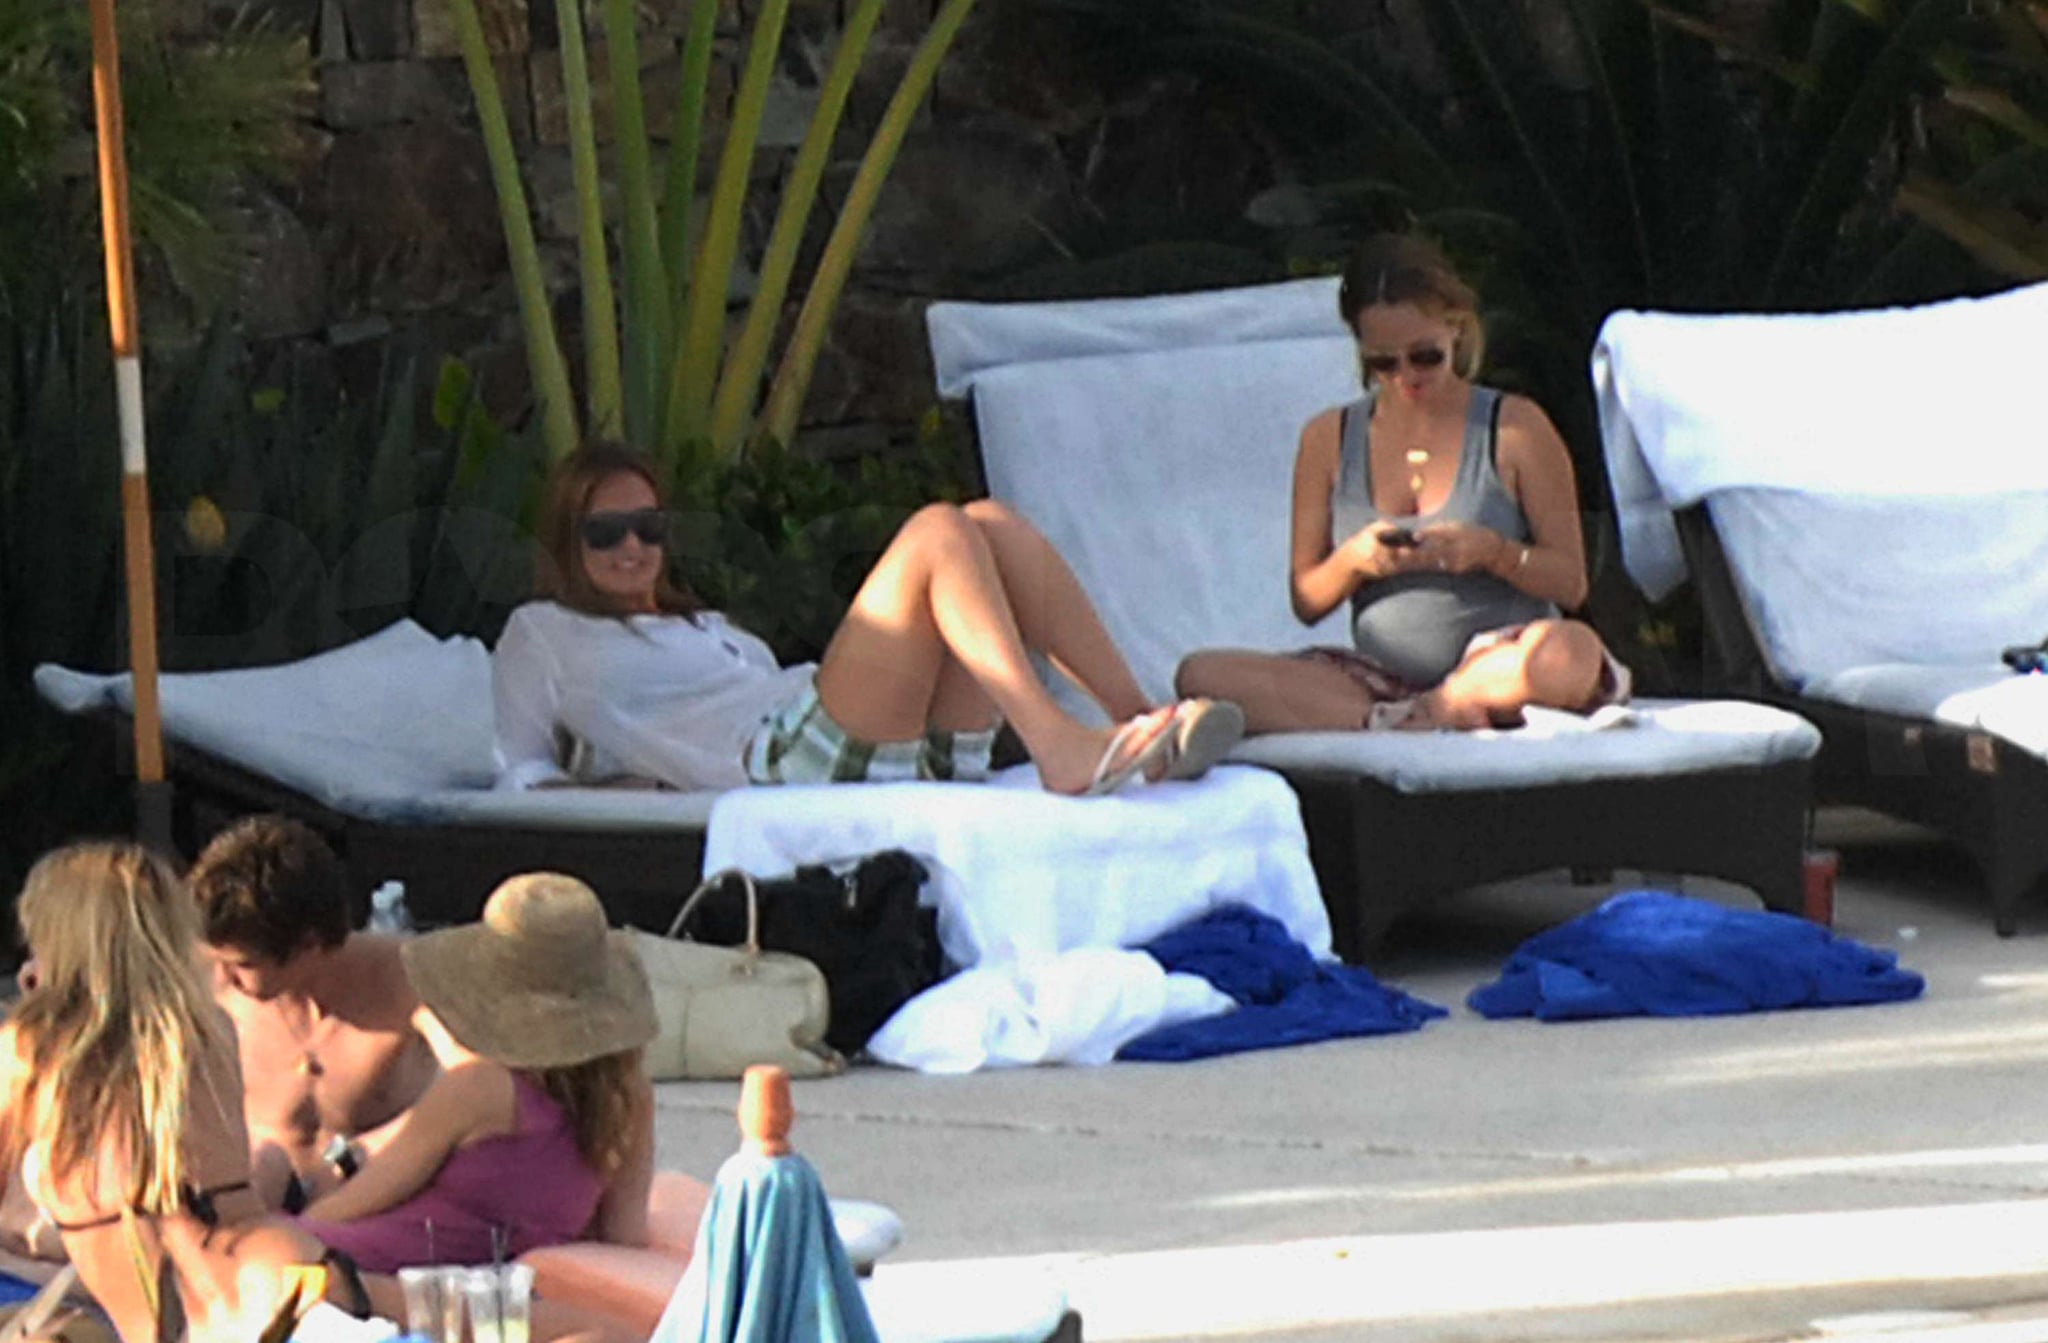 Bikini Photos of Jennifer Aniston, Cox-Arquettes, Leonardo DiCaprio, Bar Refaeli in ...2048 x 1343